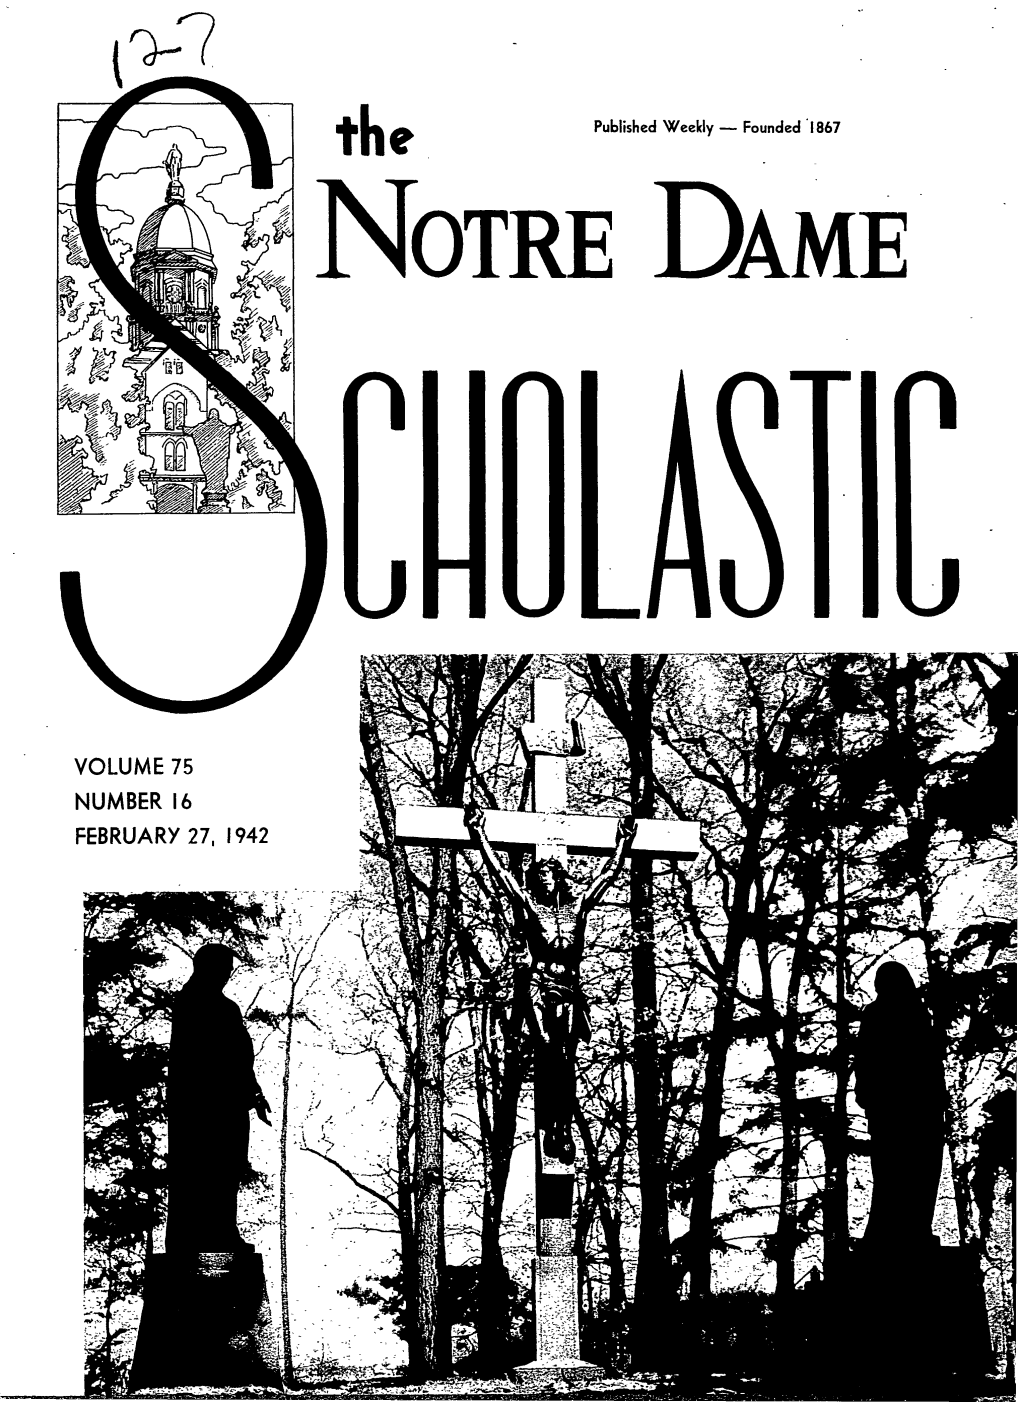 Notre Dame Scholastic, Vol. 75, No. 16